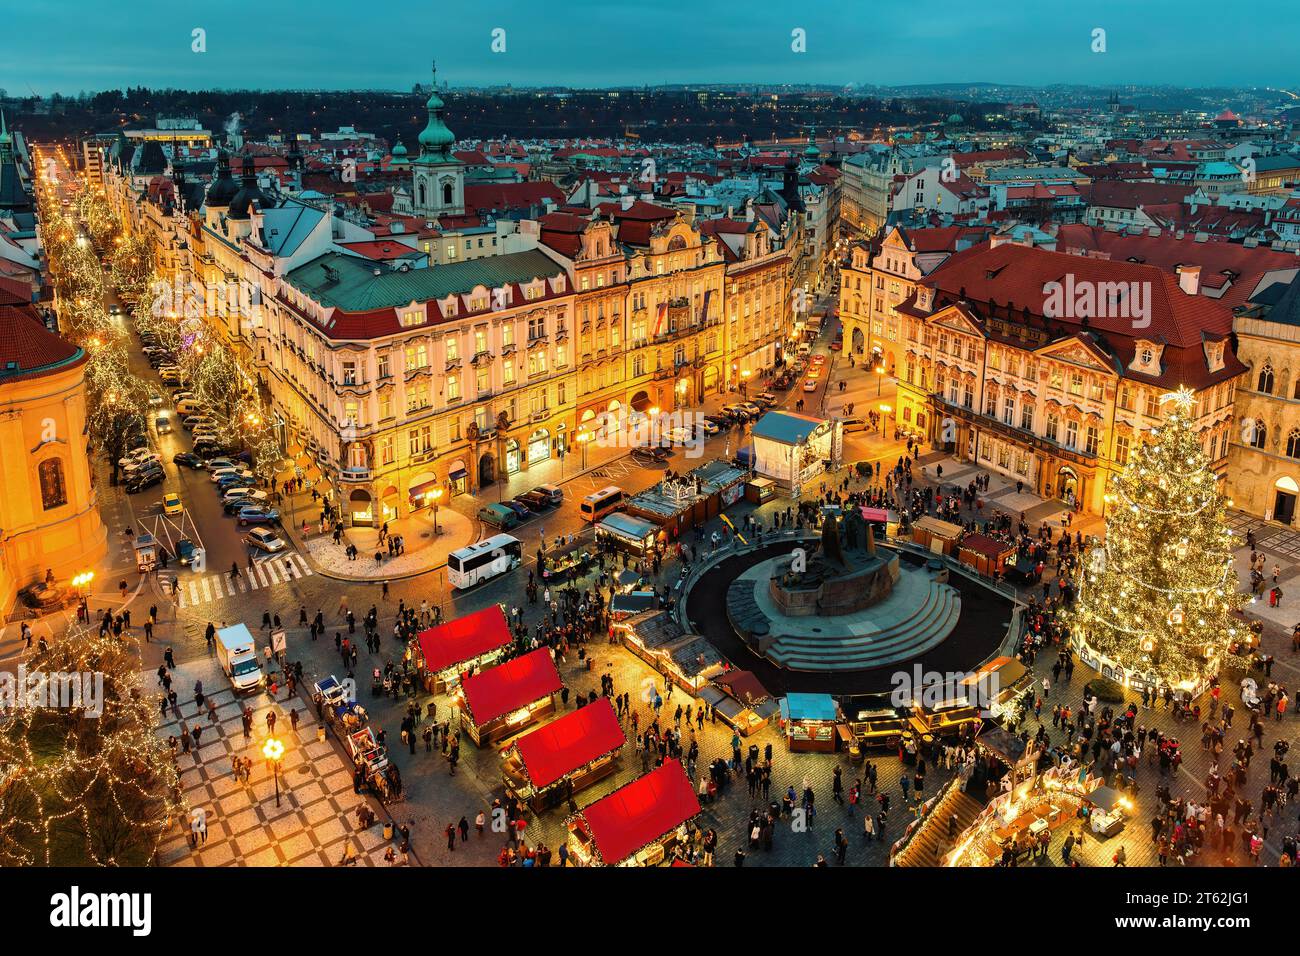 Abendblick auf den berühmten Weihnachtsmarkt auf dem Altstädter Ring in Prag, Tschechien. Stockfoto